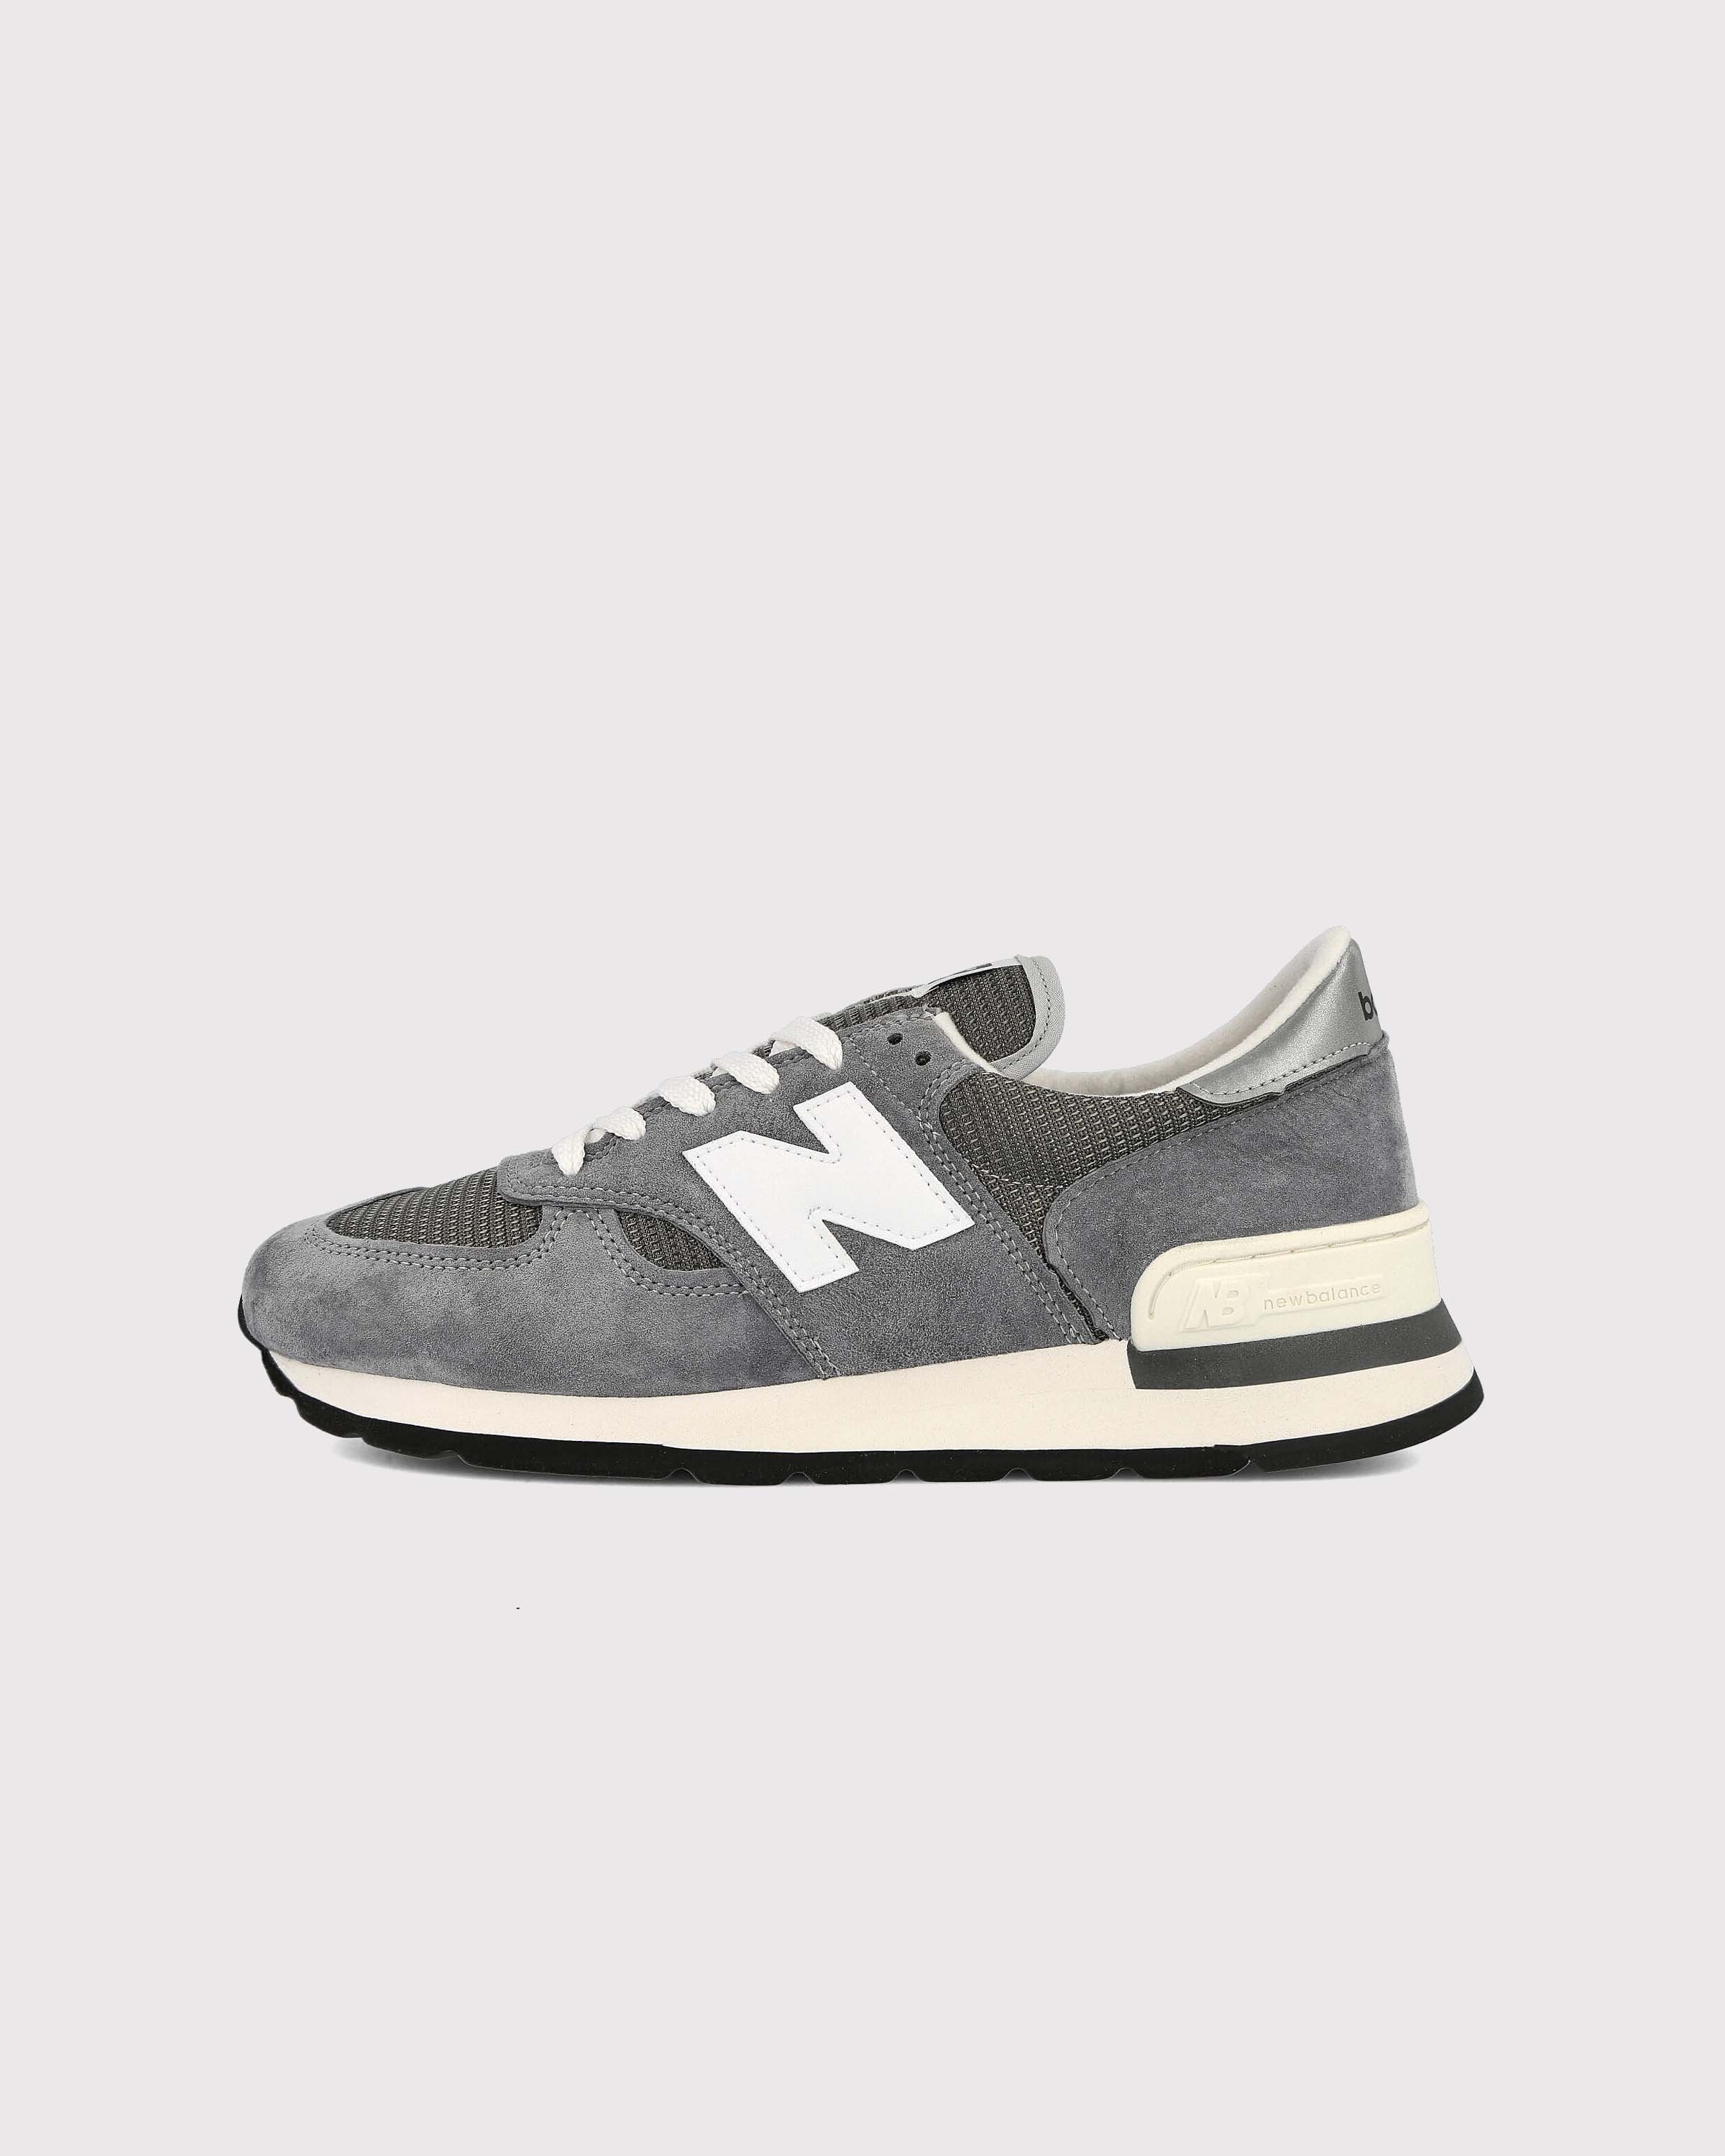 New Balance - M990GR1 Grey - Footwear - Grey - Image 2